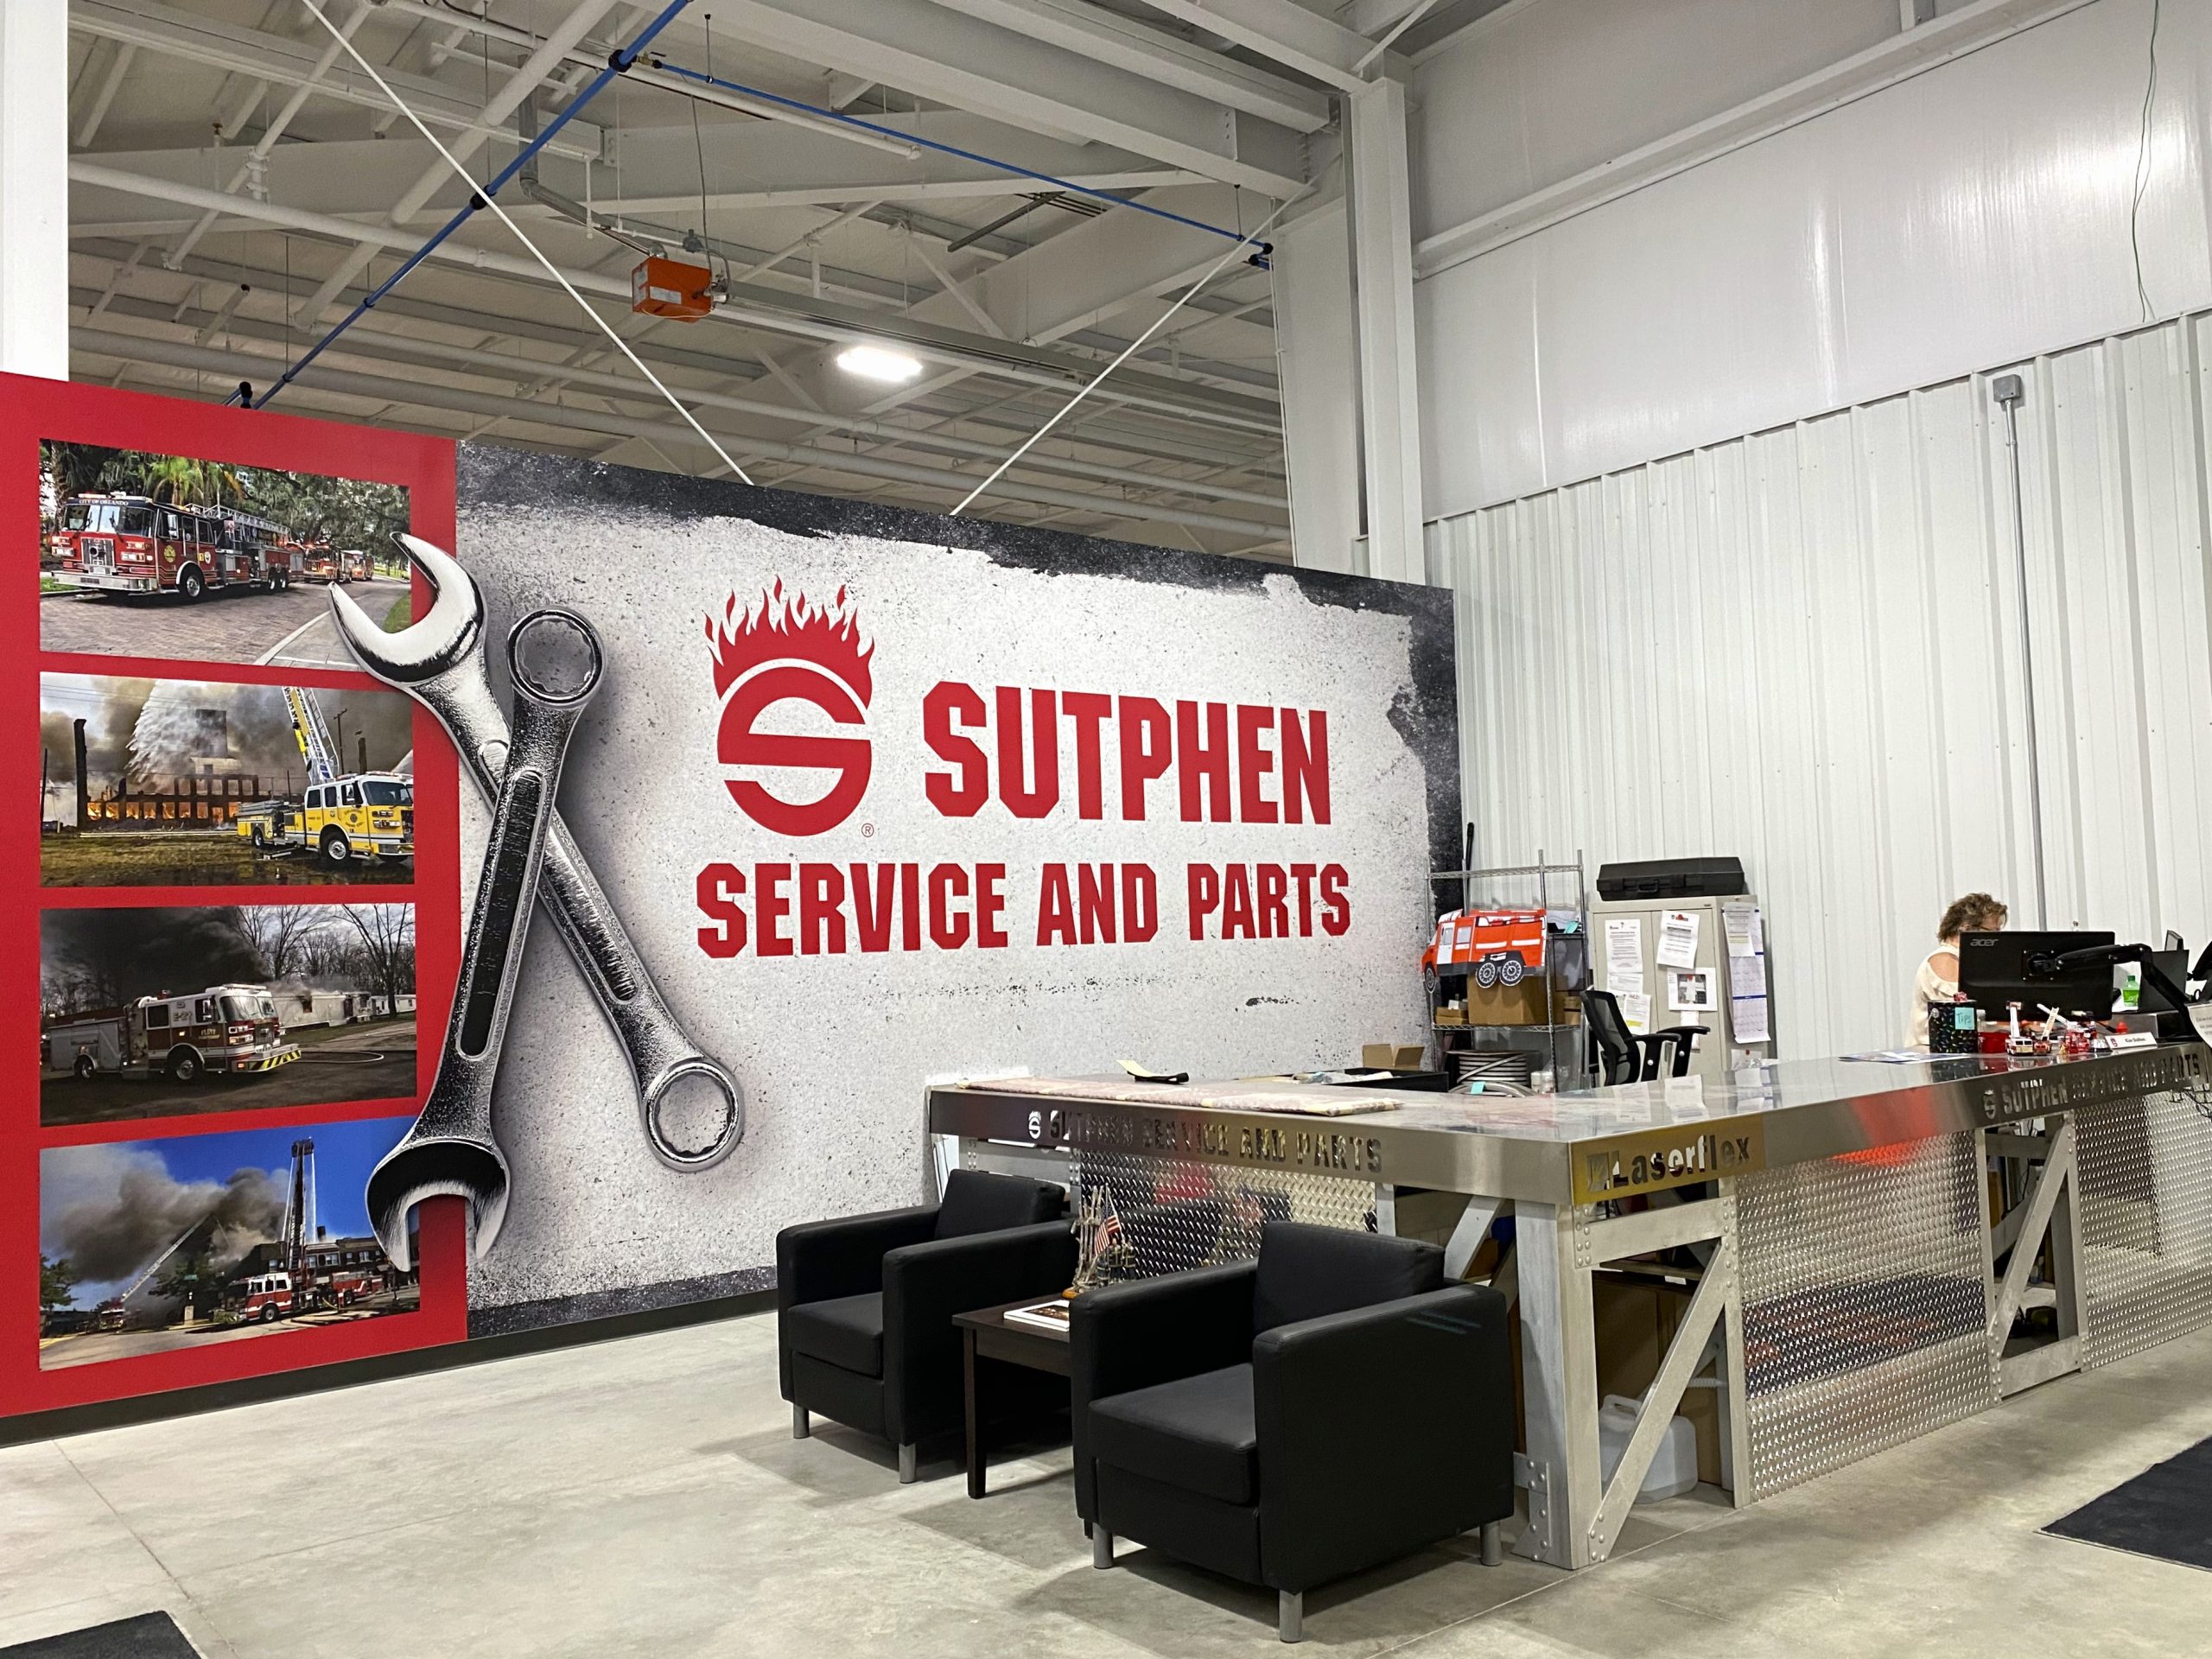 Sutphen Service, Parts and Warranty